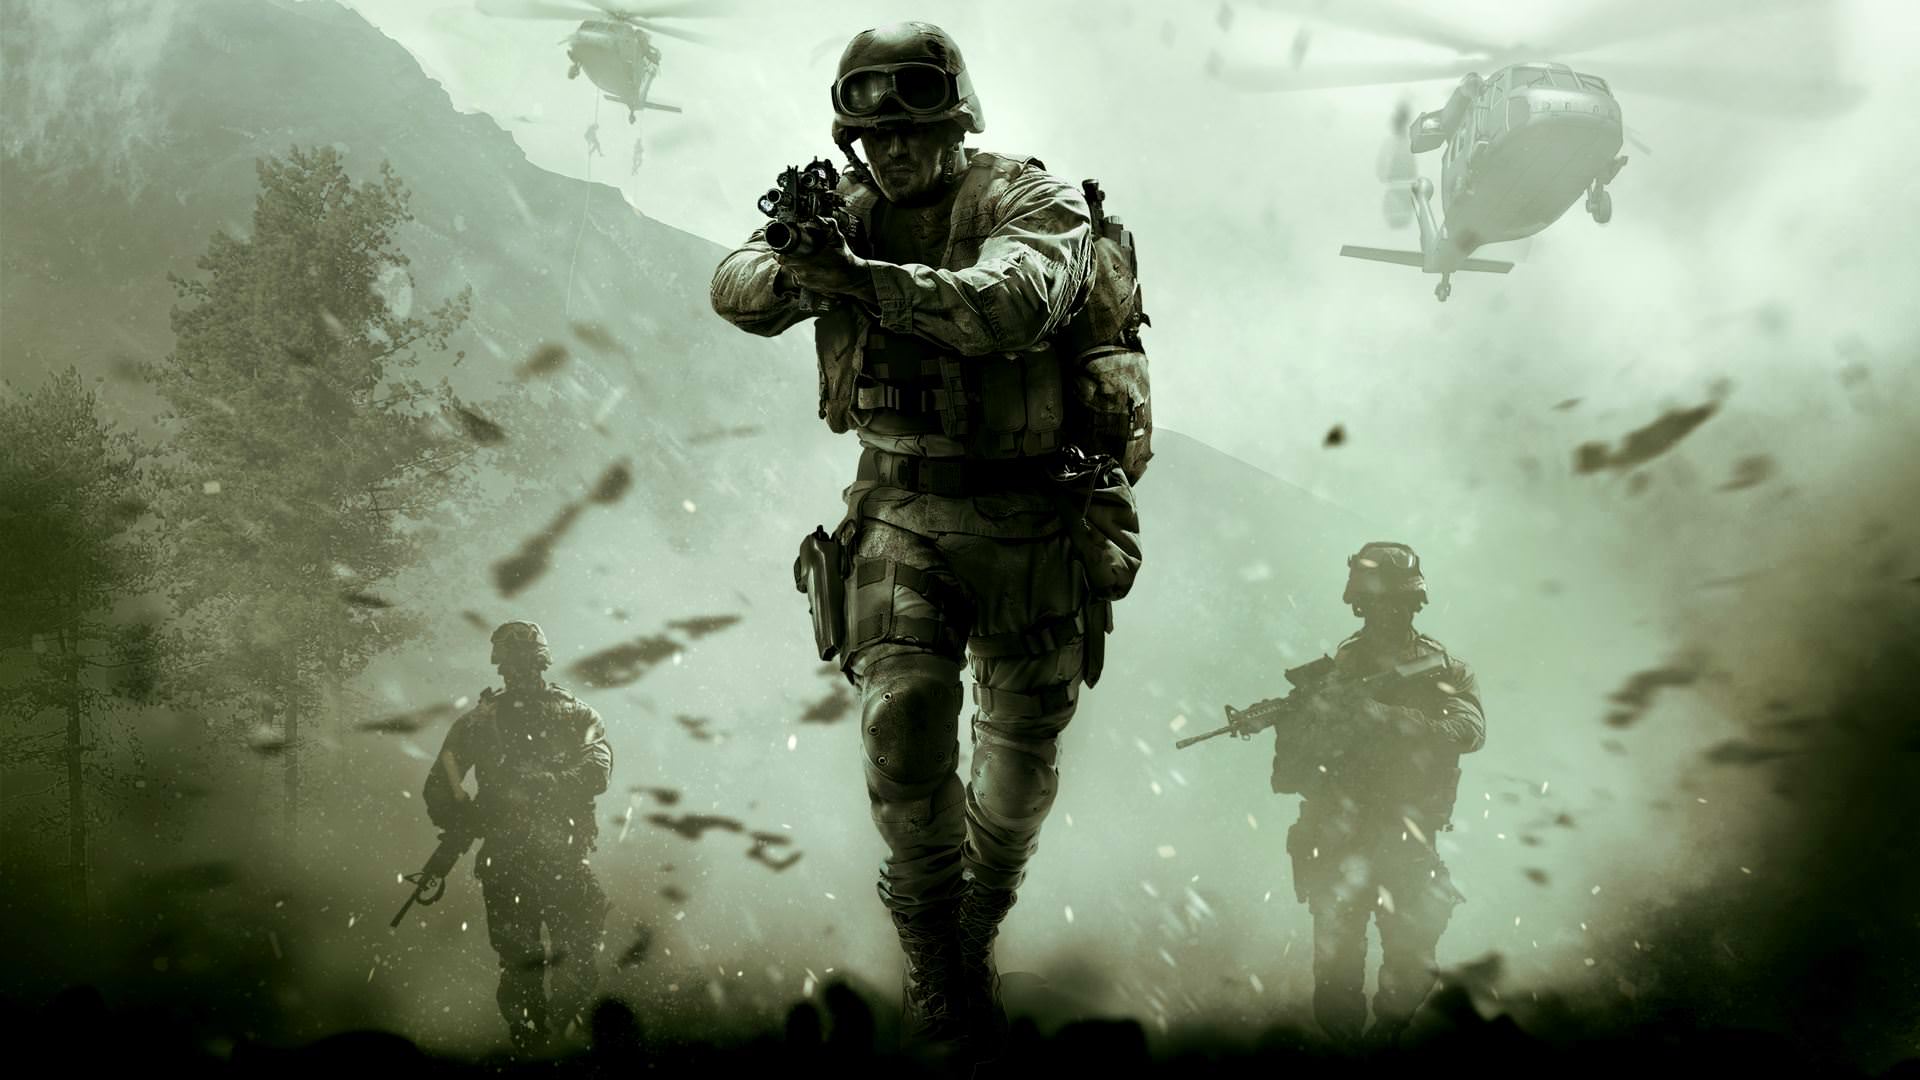 Call of Duty Wallpapers - Los mejores fondos gratuitos de Call of Duty